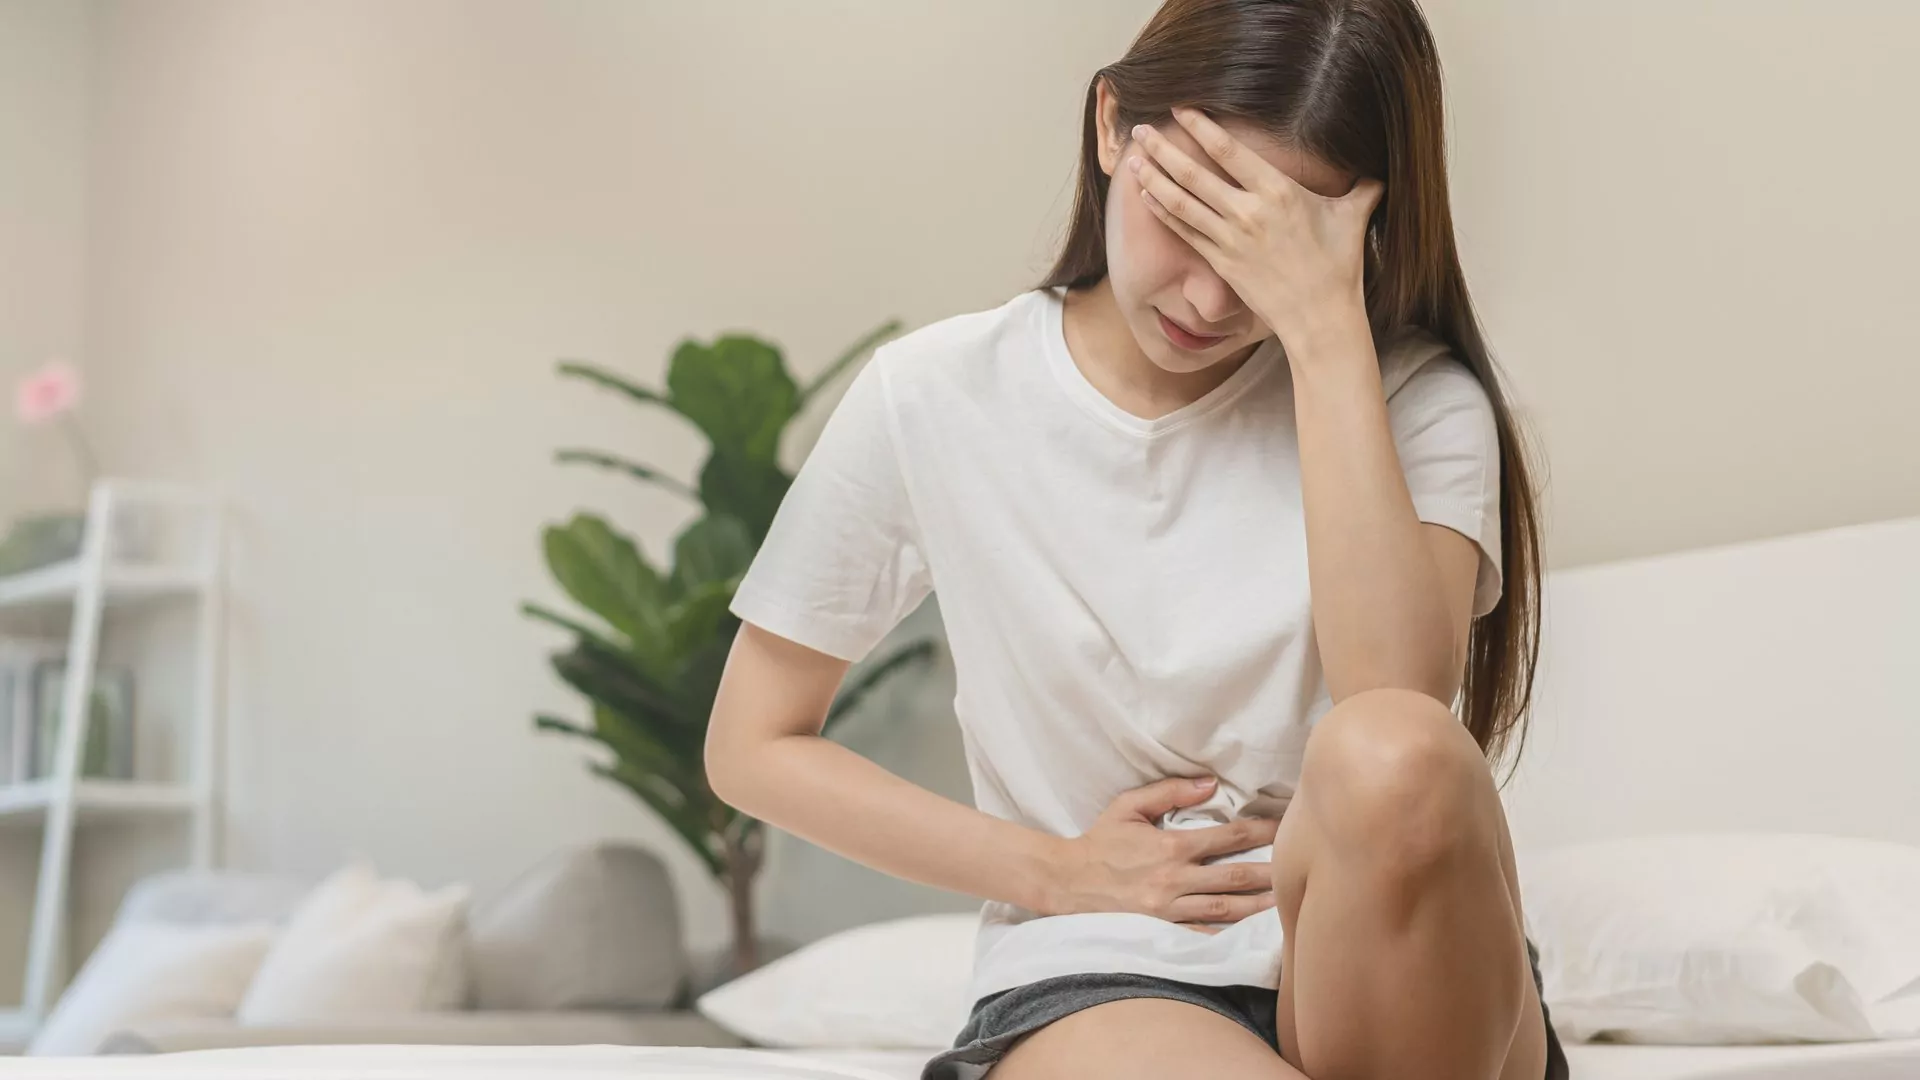 Krampfhafte Schmerzen, Durchfälle, Blutungen und sogar Fieber können Symptome für Morbus Crohn sein.